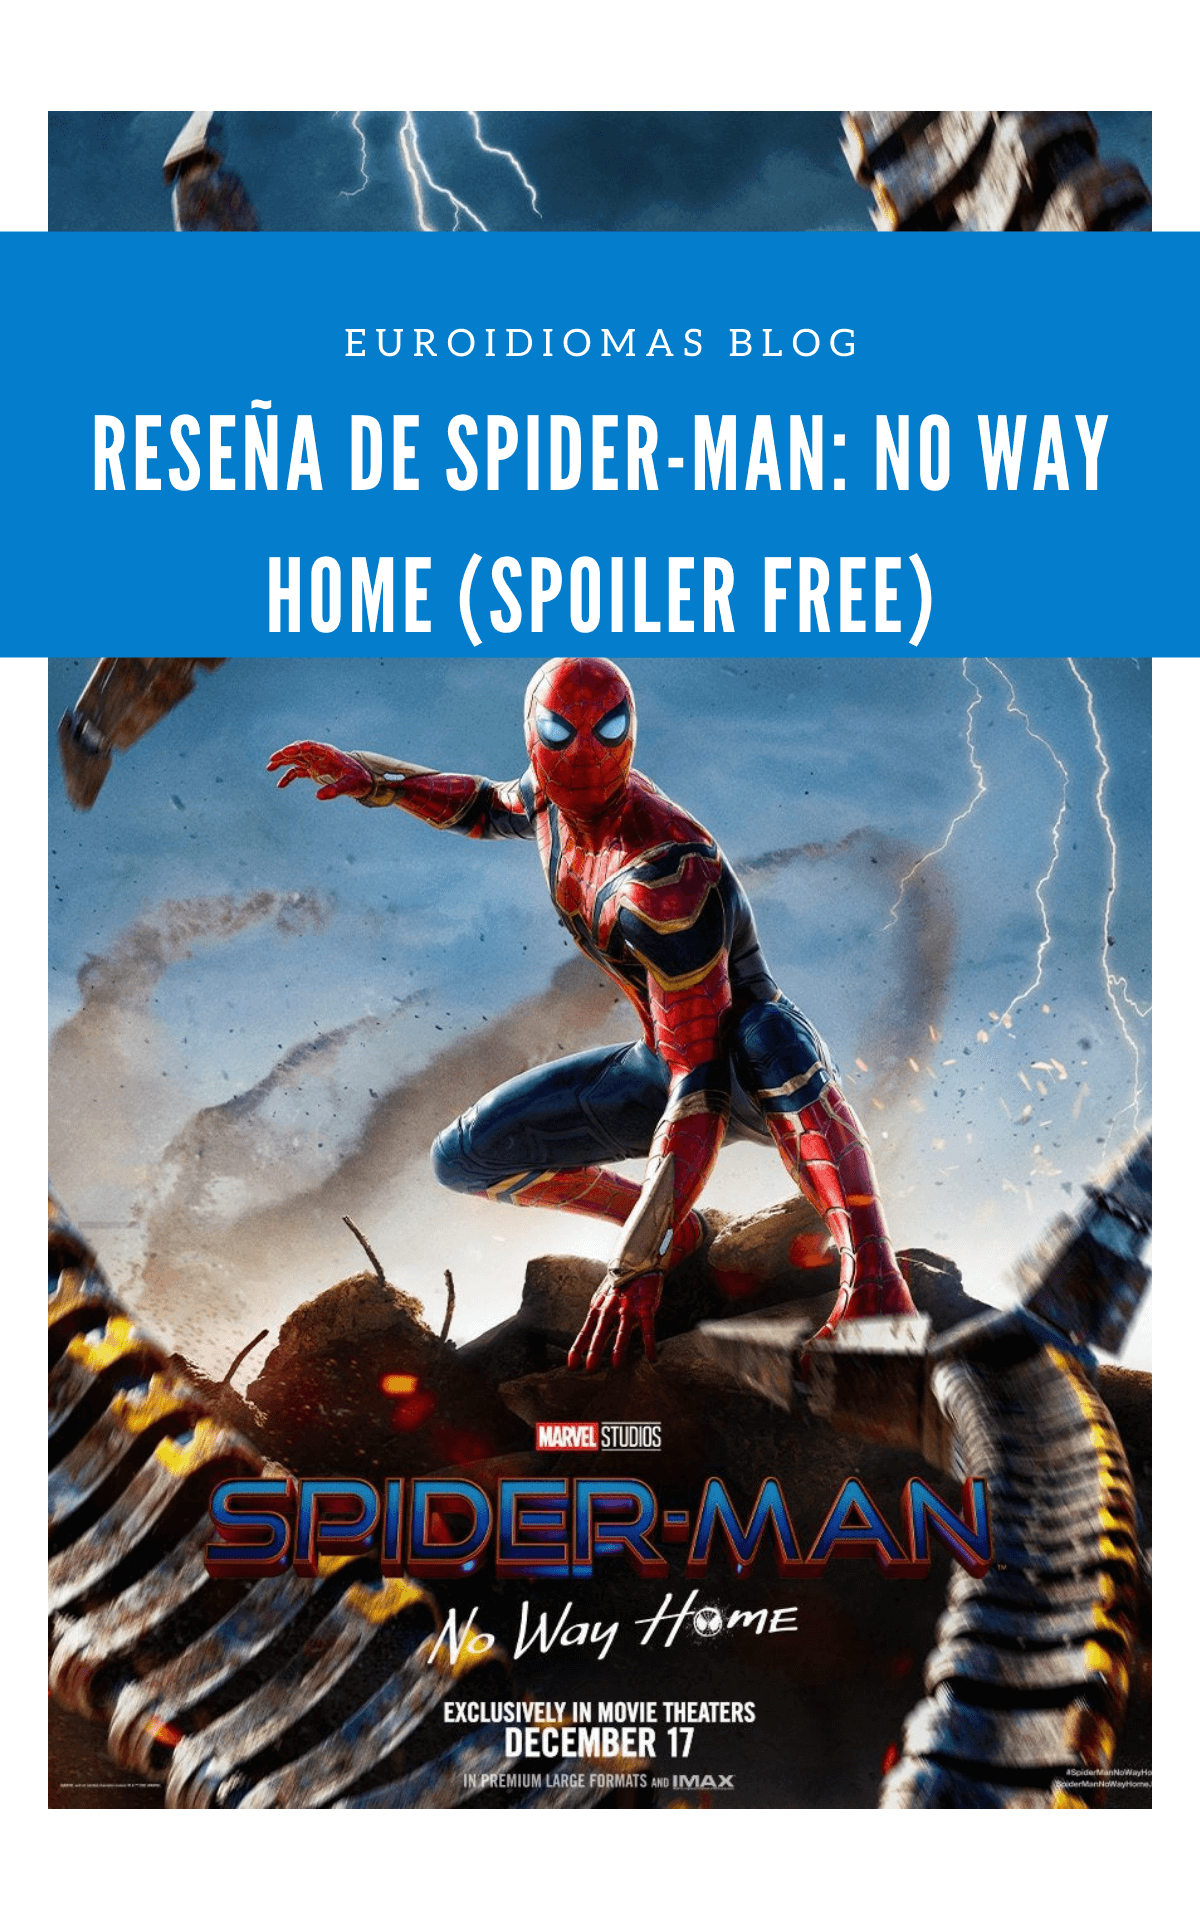 Reseña de Spider-Man: No Way Home (Spoiler Free)